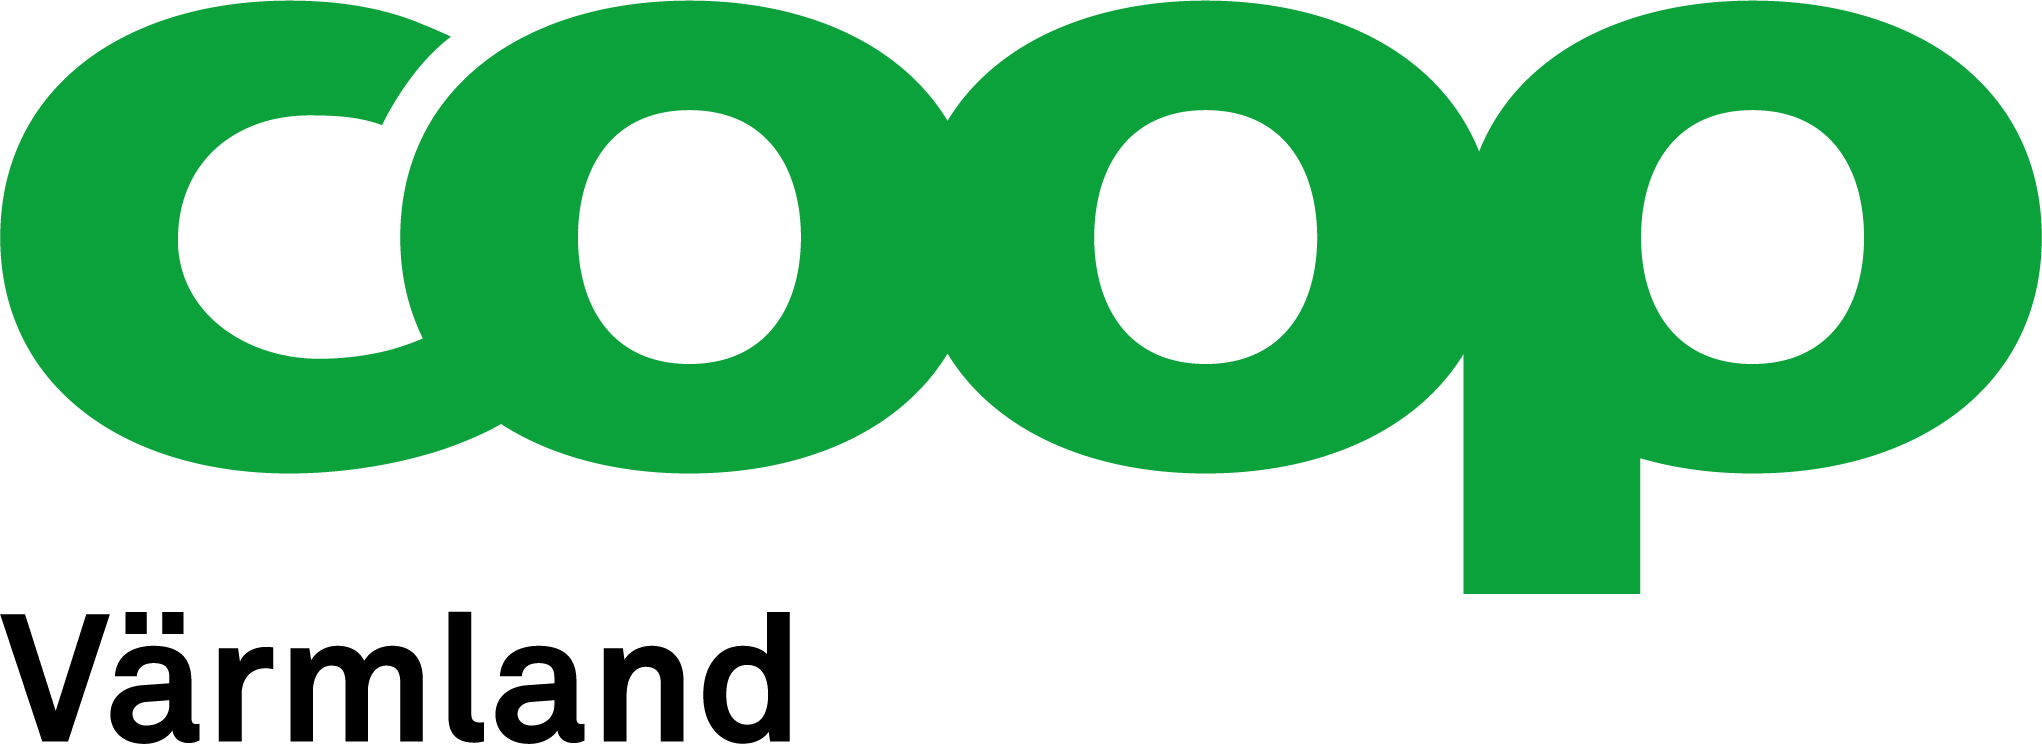 Coop Värmland logotyp